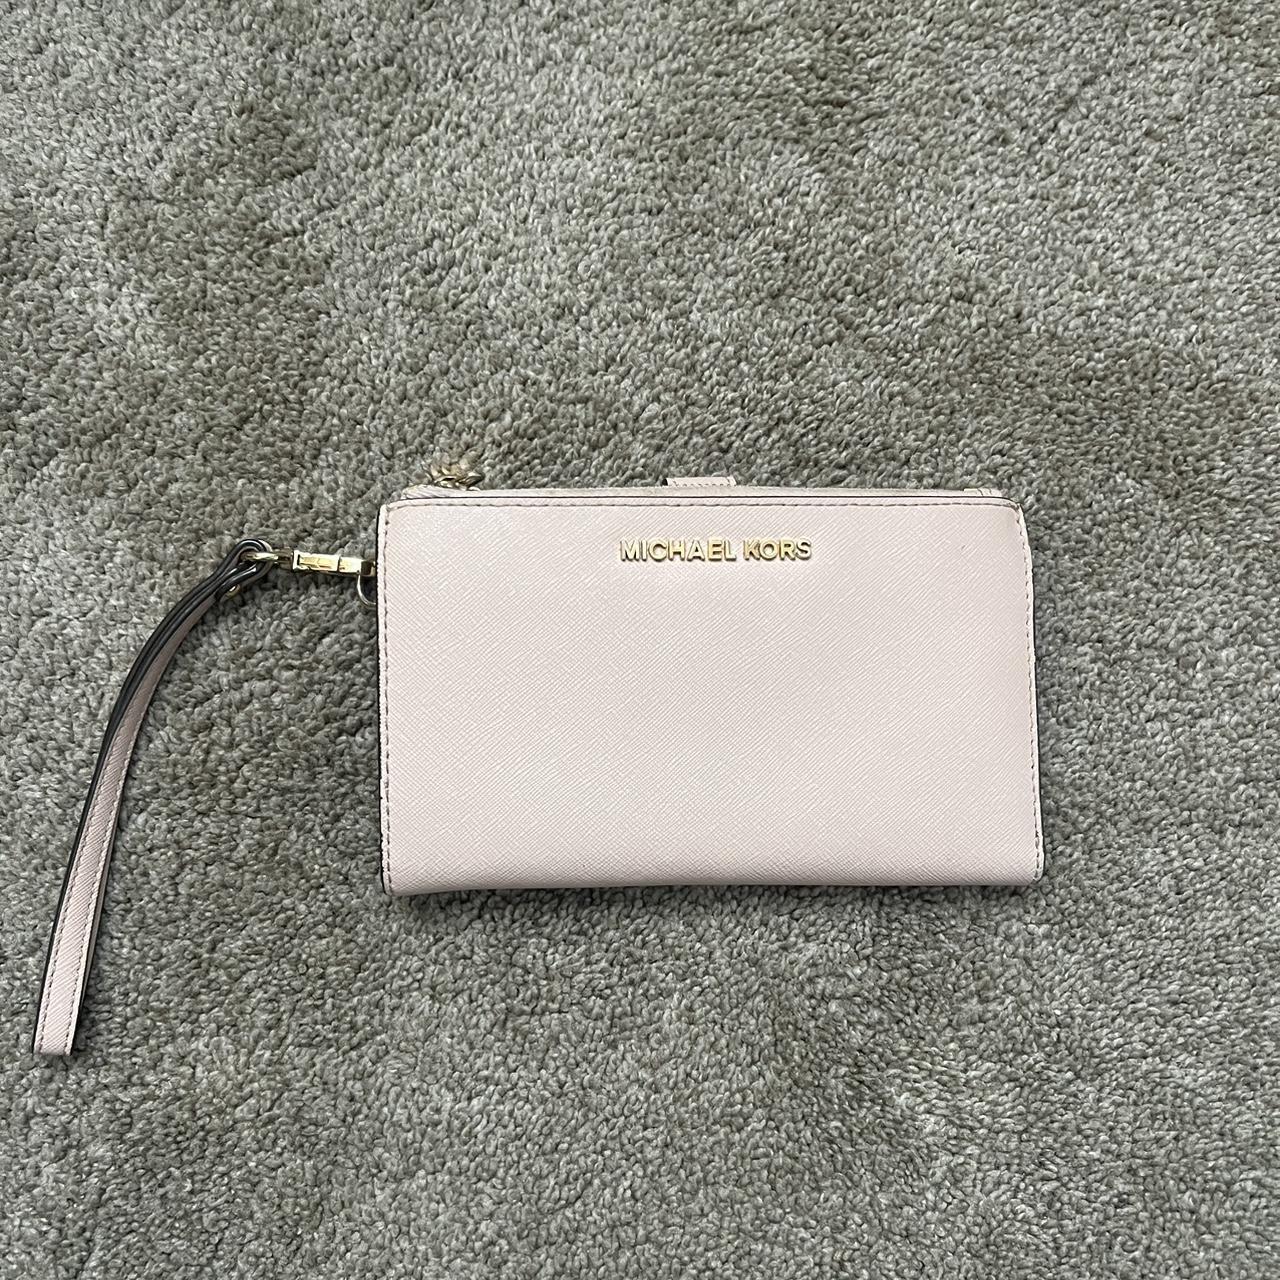 Michael Kors Jet Set Travel Phone Case Wallet Wristlet Pink Leather  Gold  198  eBay